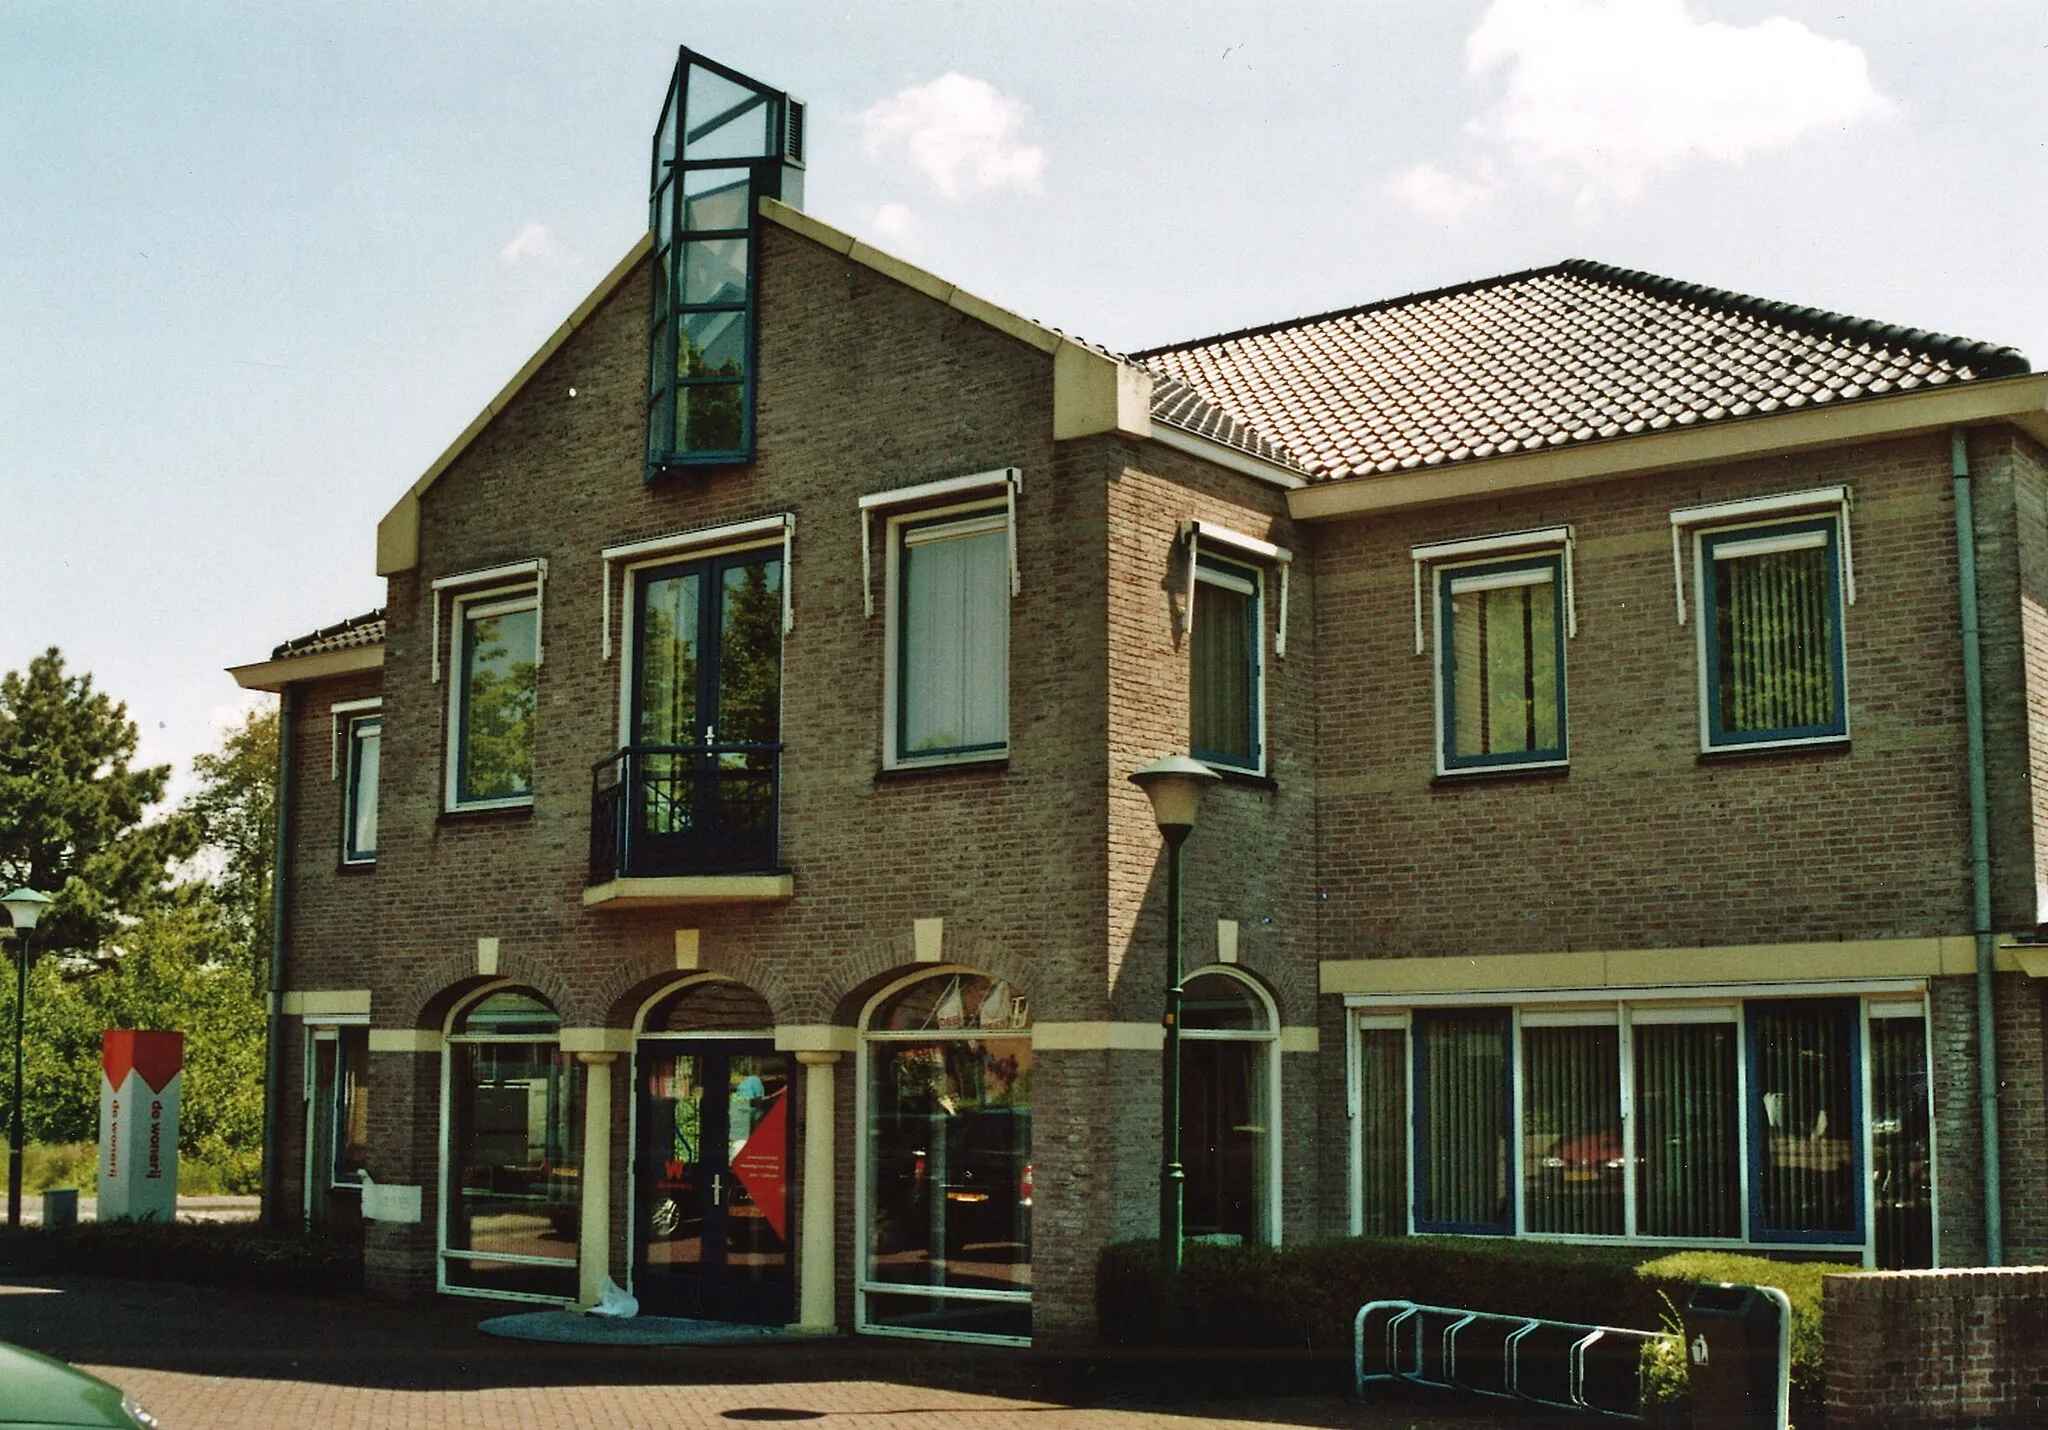 Photo showing: De Wonerij corporatie Dhr. K. Davidse heeft in het jaar 2009 in opdracht van het Regionaal Archief Alkmaar een serie foto's gemaakt van interessante locaties in het werkgebied van het Regionaal Archief.